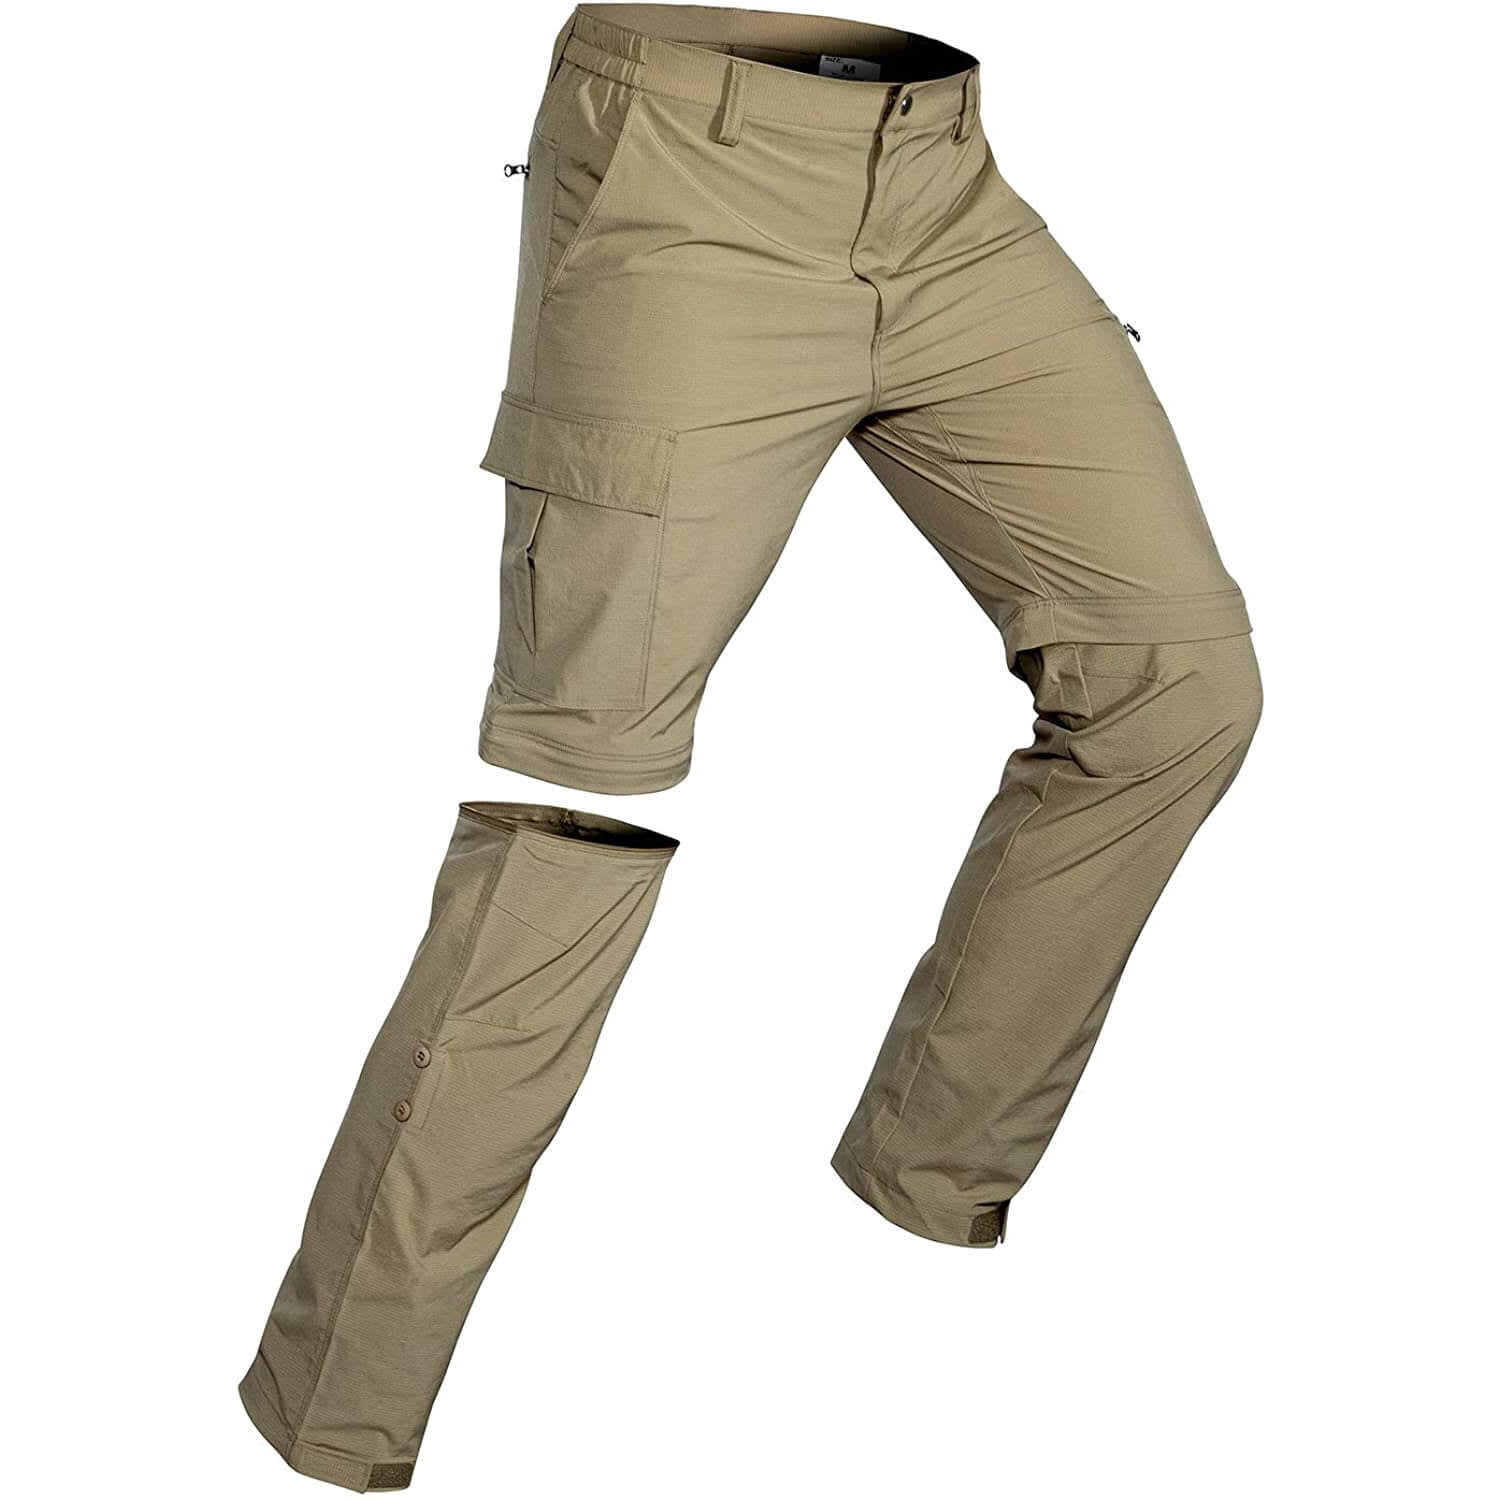 Hiauspor Men's Convertible Hiking Pants Outdoor Quick Dry Zip Off Pants ...